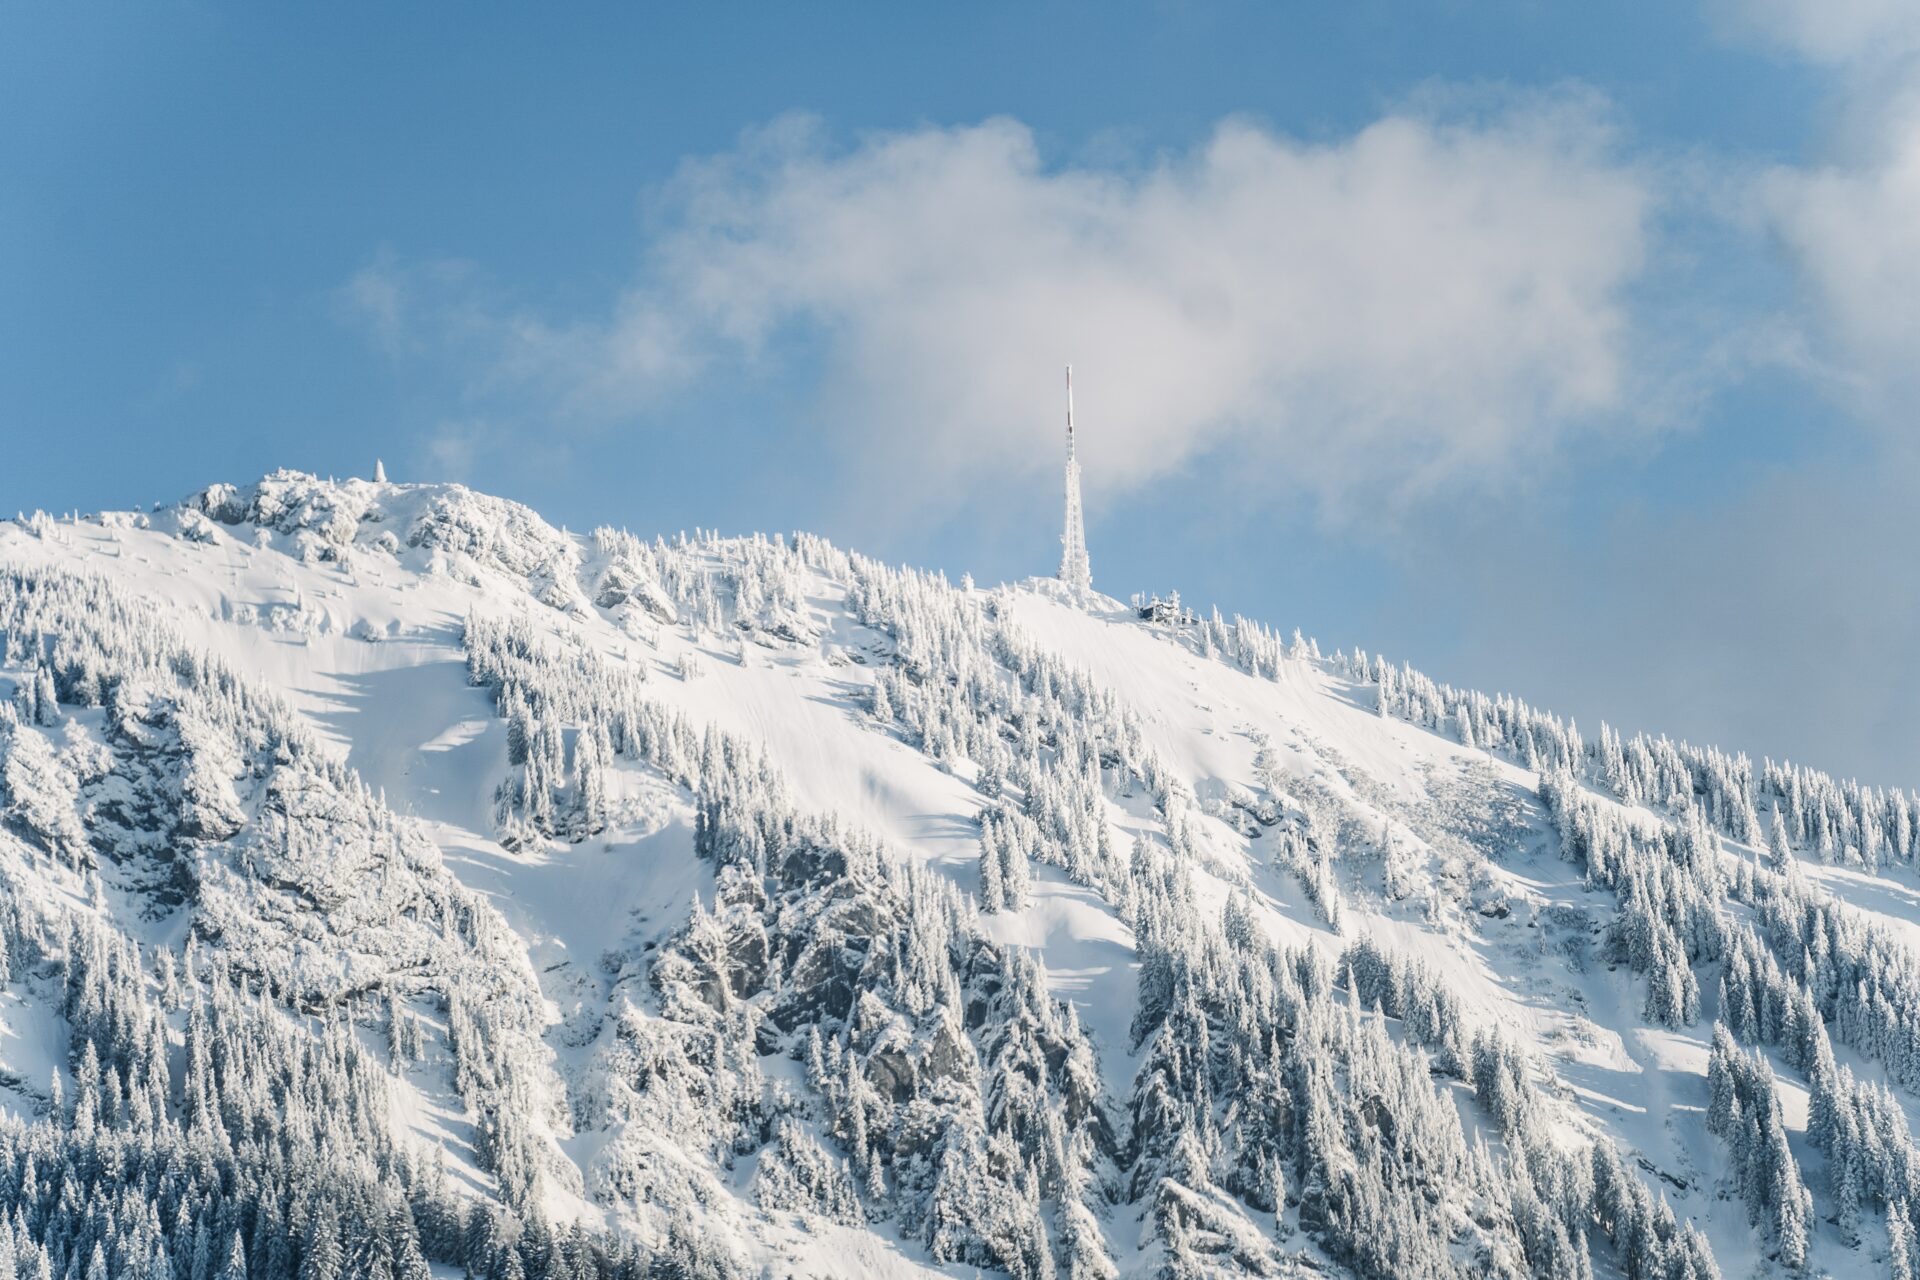 Egal ob im Winter oder im Sommer, das Allgäu bietet immer ein wunderschönes Panorama. Bildquelle: © Philipp Angerhofer / Unsplash.com